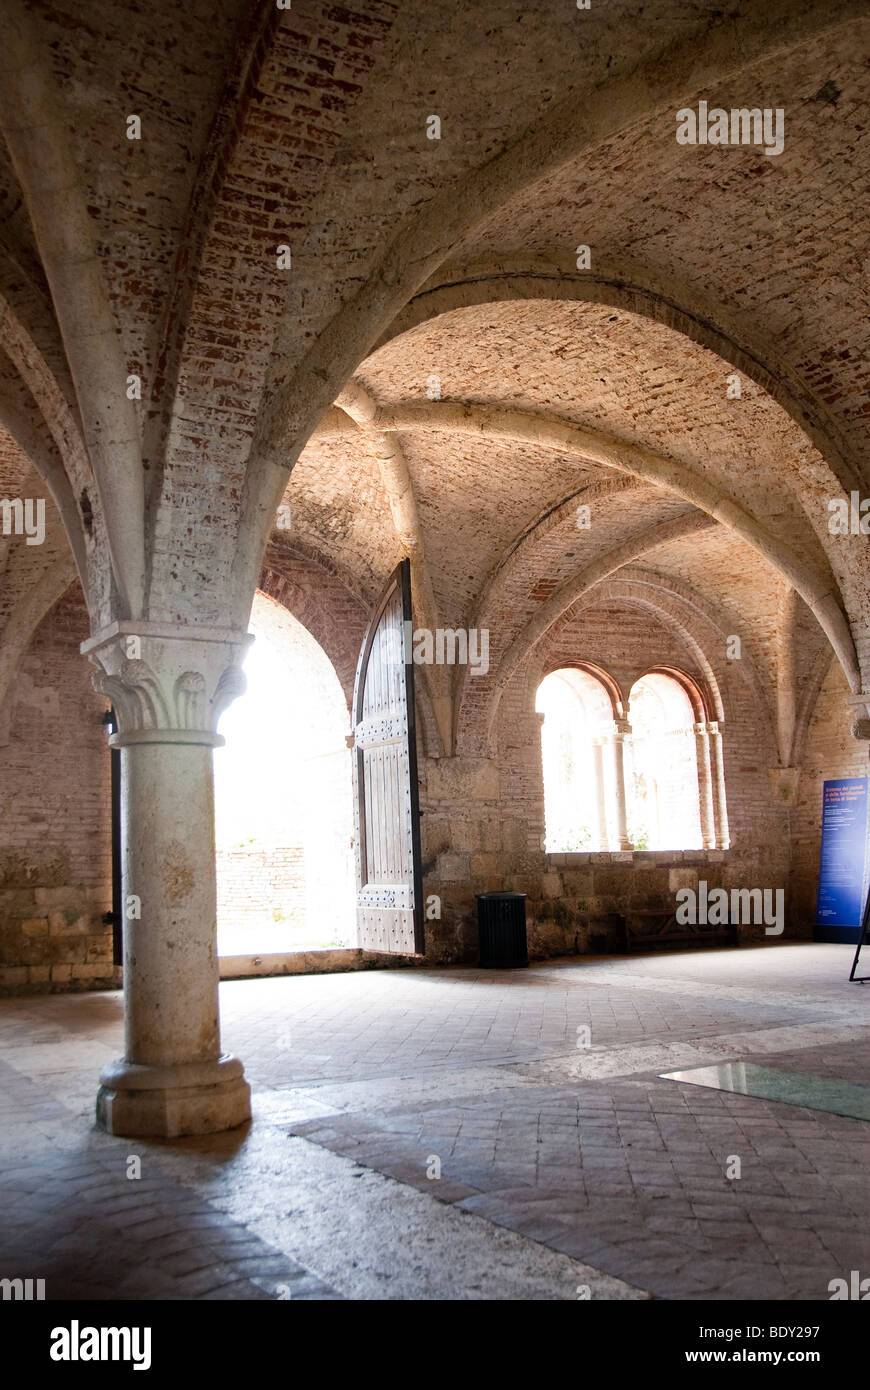 Sala Capitular de San Galgano abadía fundada en el siglo XII por monjes cistercienses franceses, cerca de Siena, ahora con el techo hundido. Foto de stock